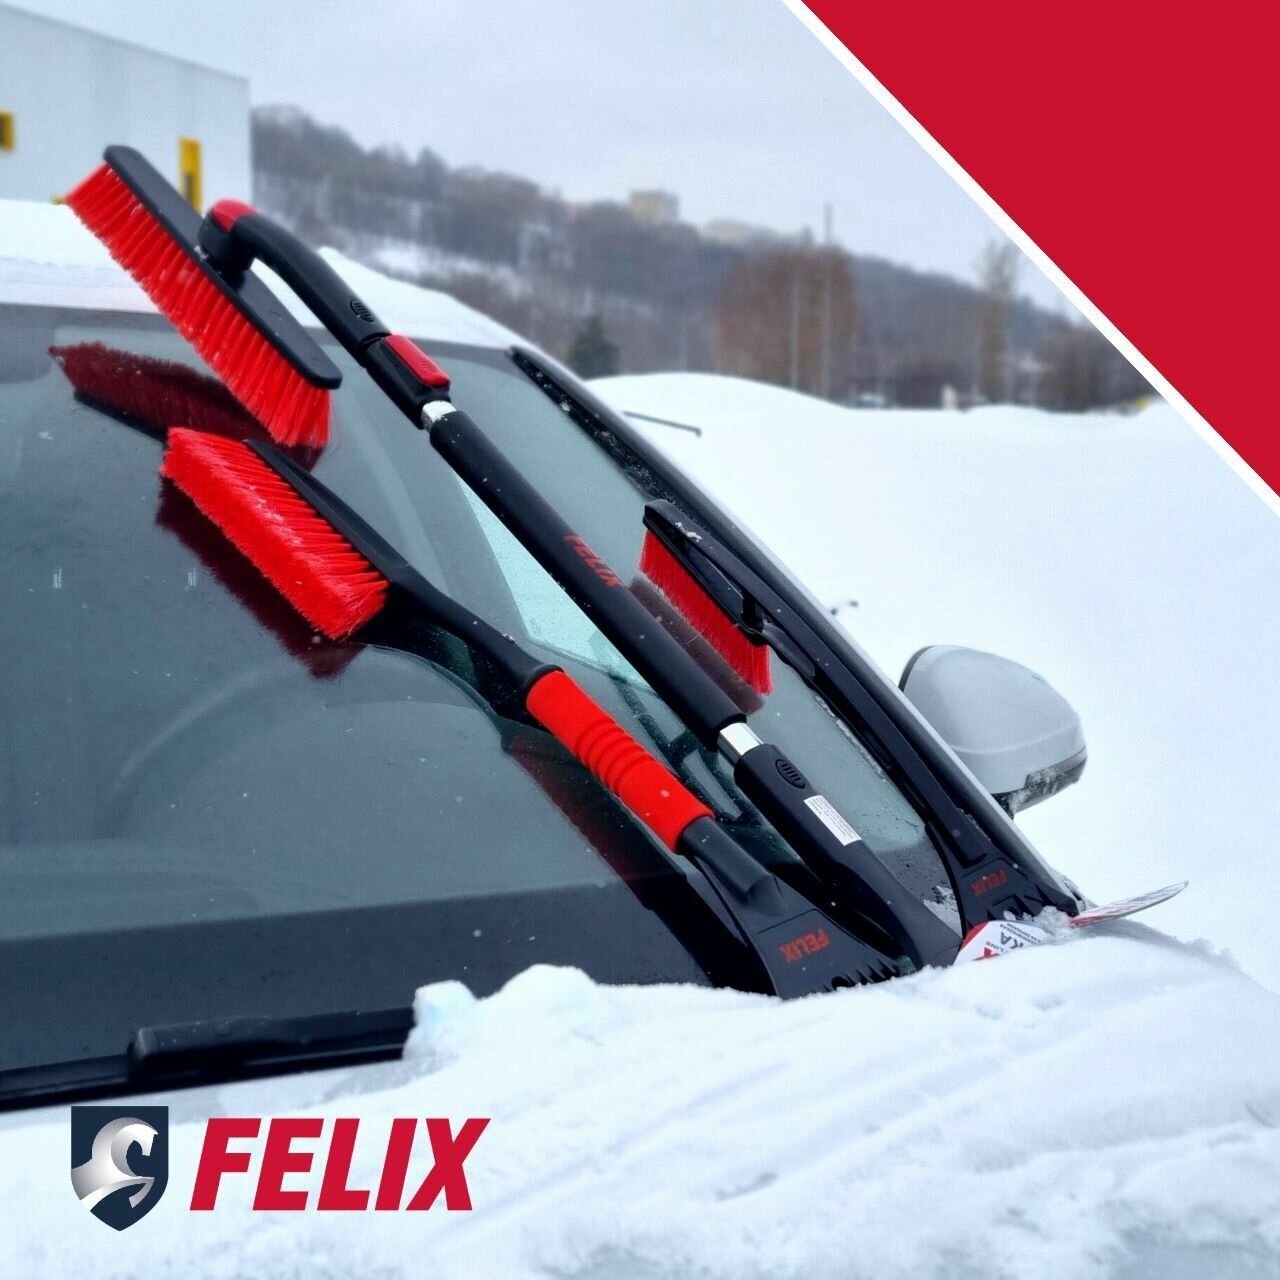 Щетка автомобильная для снега со скребком и поролоновой ручкой Felix 635